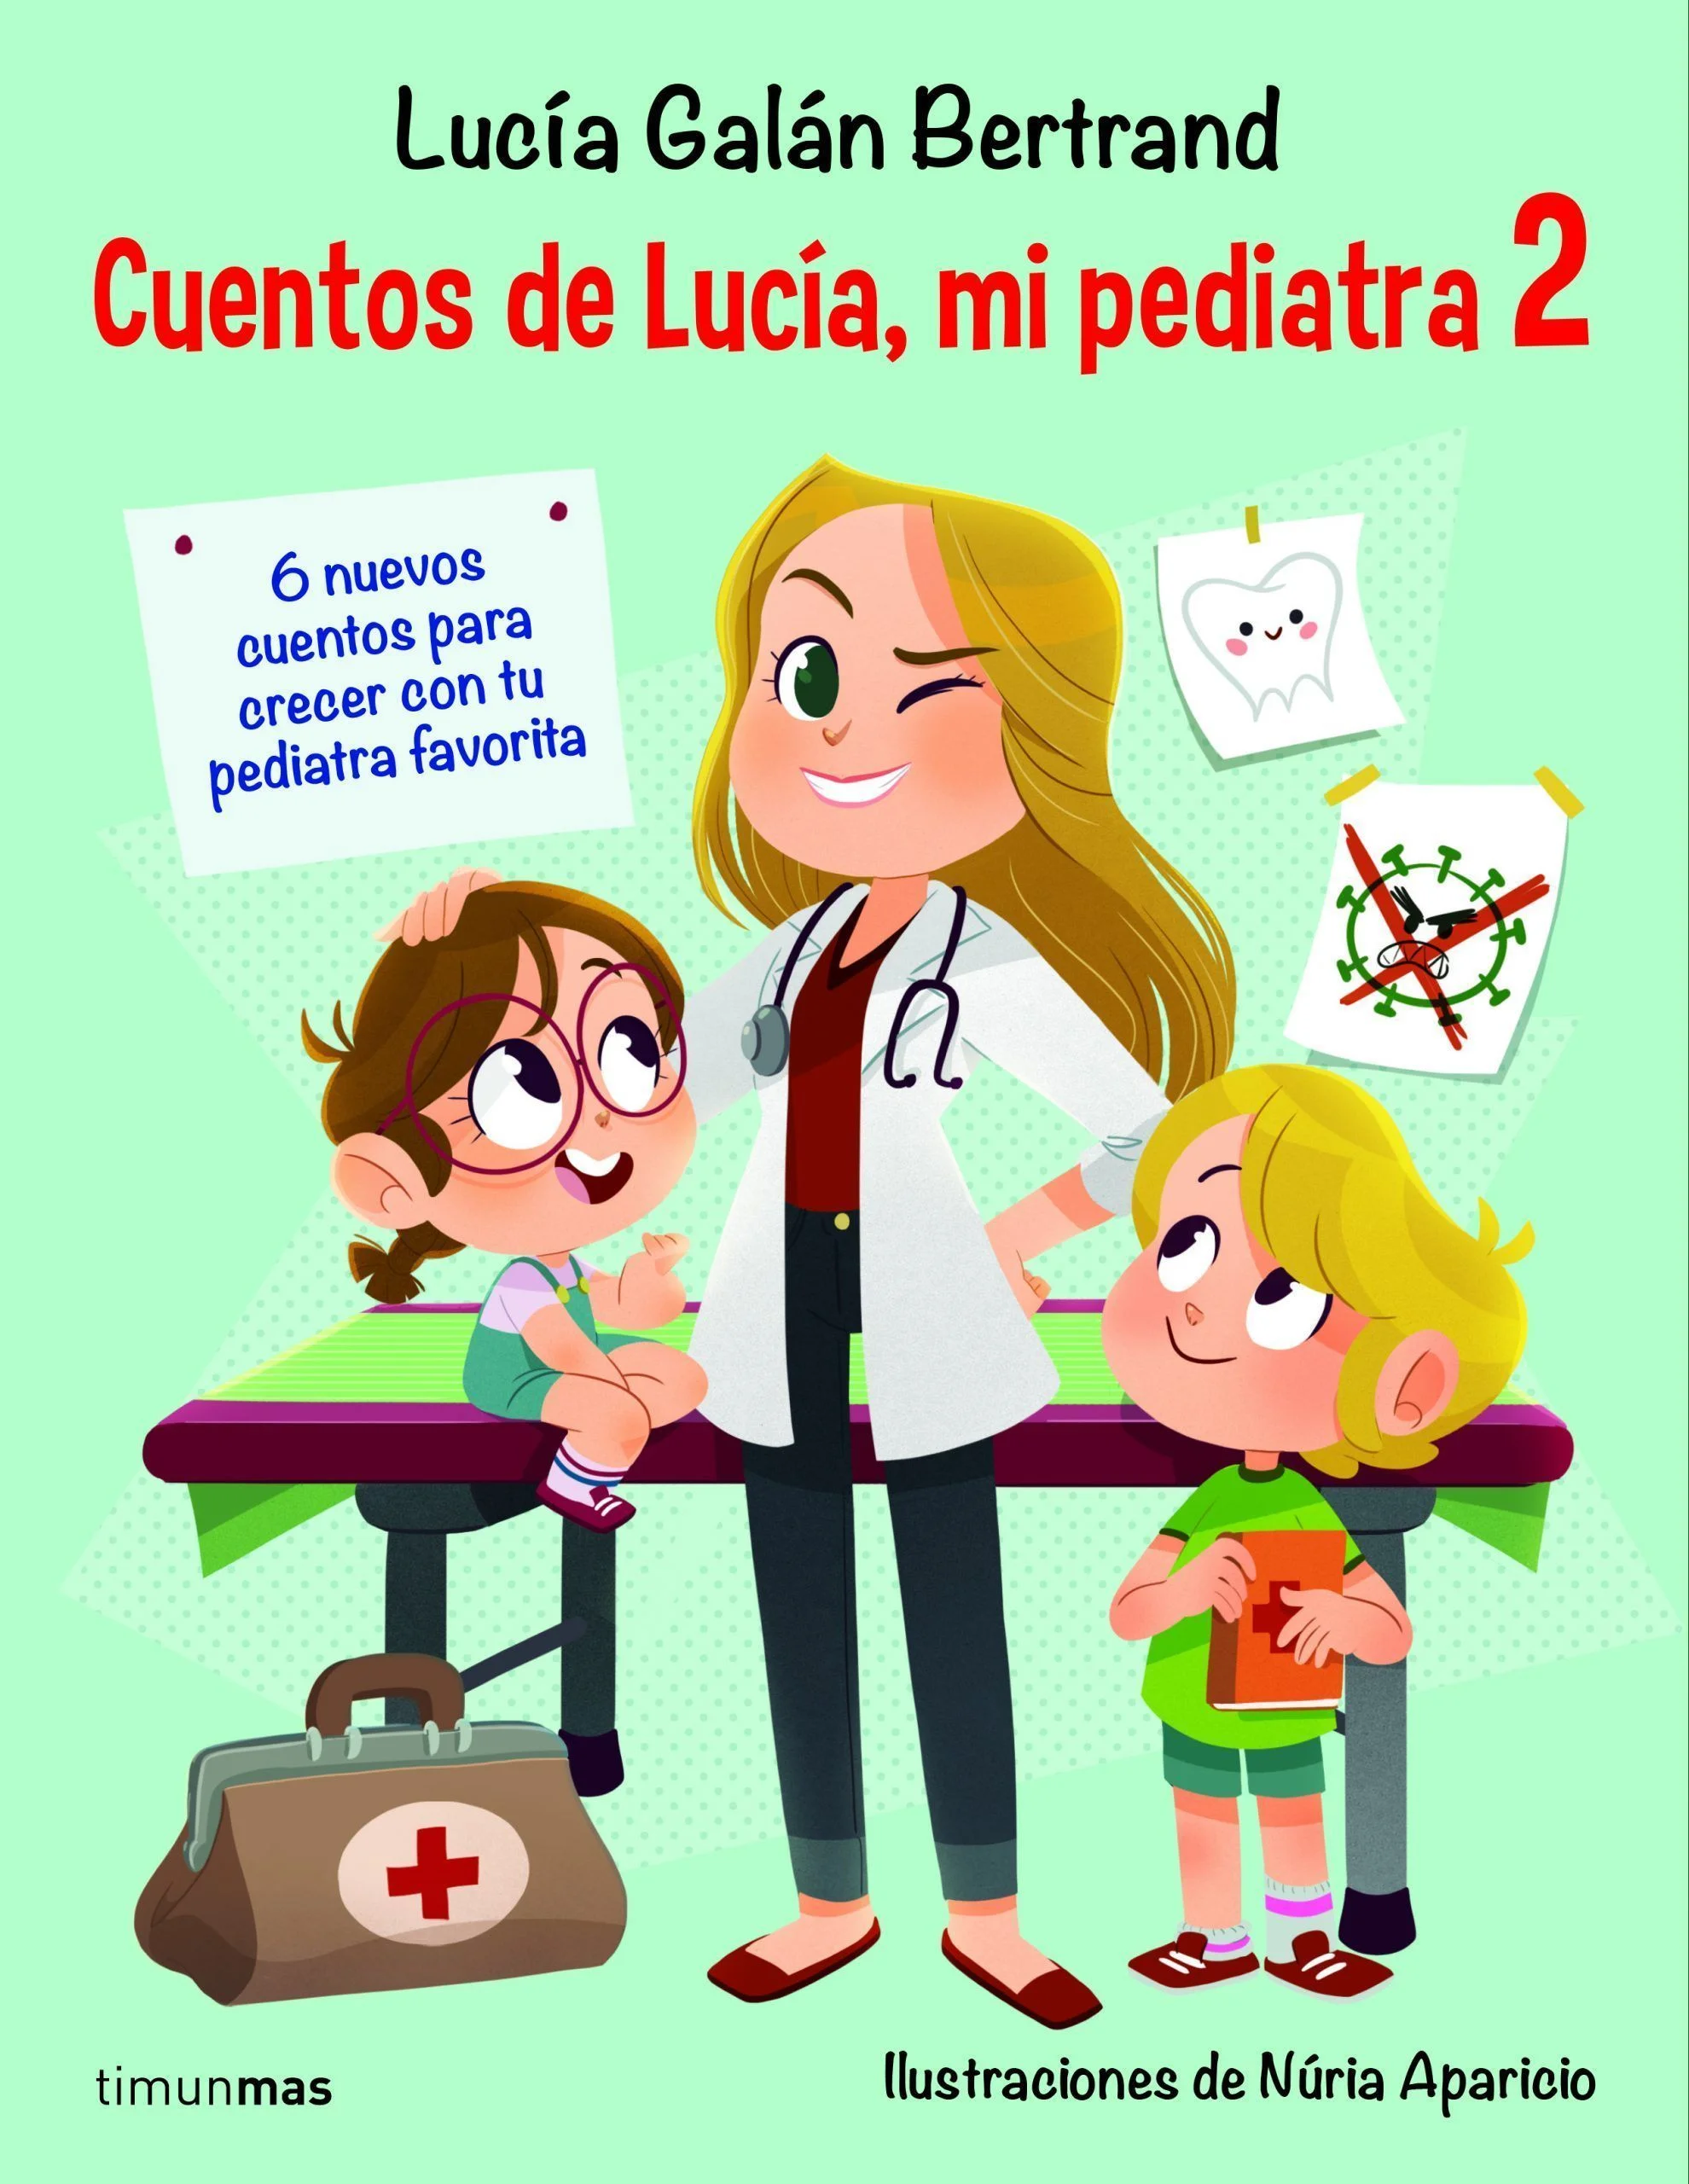 Los nuevos cuentos de Lucía, mi pediatra